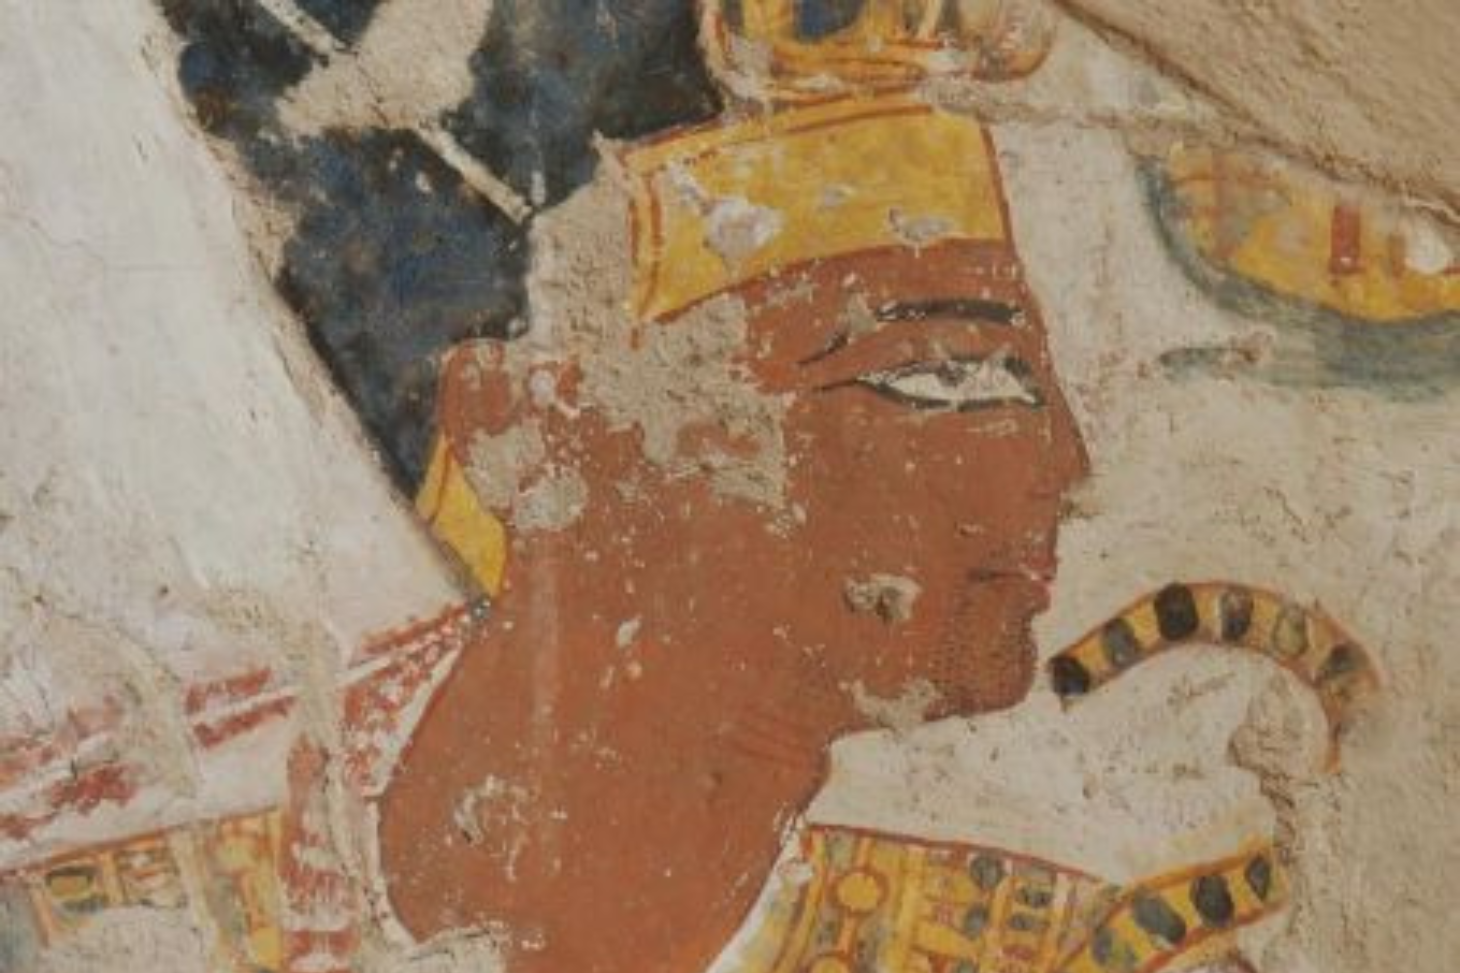 Portrait de Ramsès II dans la tombe de Nakhtamon (vers 1 200 avant notre ère). La coiffe, le collier ainsi que le sceptre royal ont été retouchés pendant sa création.  © LAMS-MAFTO, CNRS